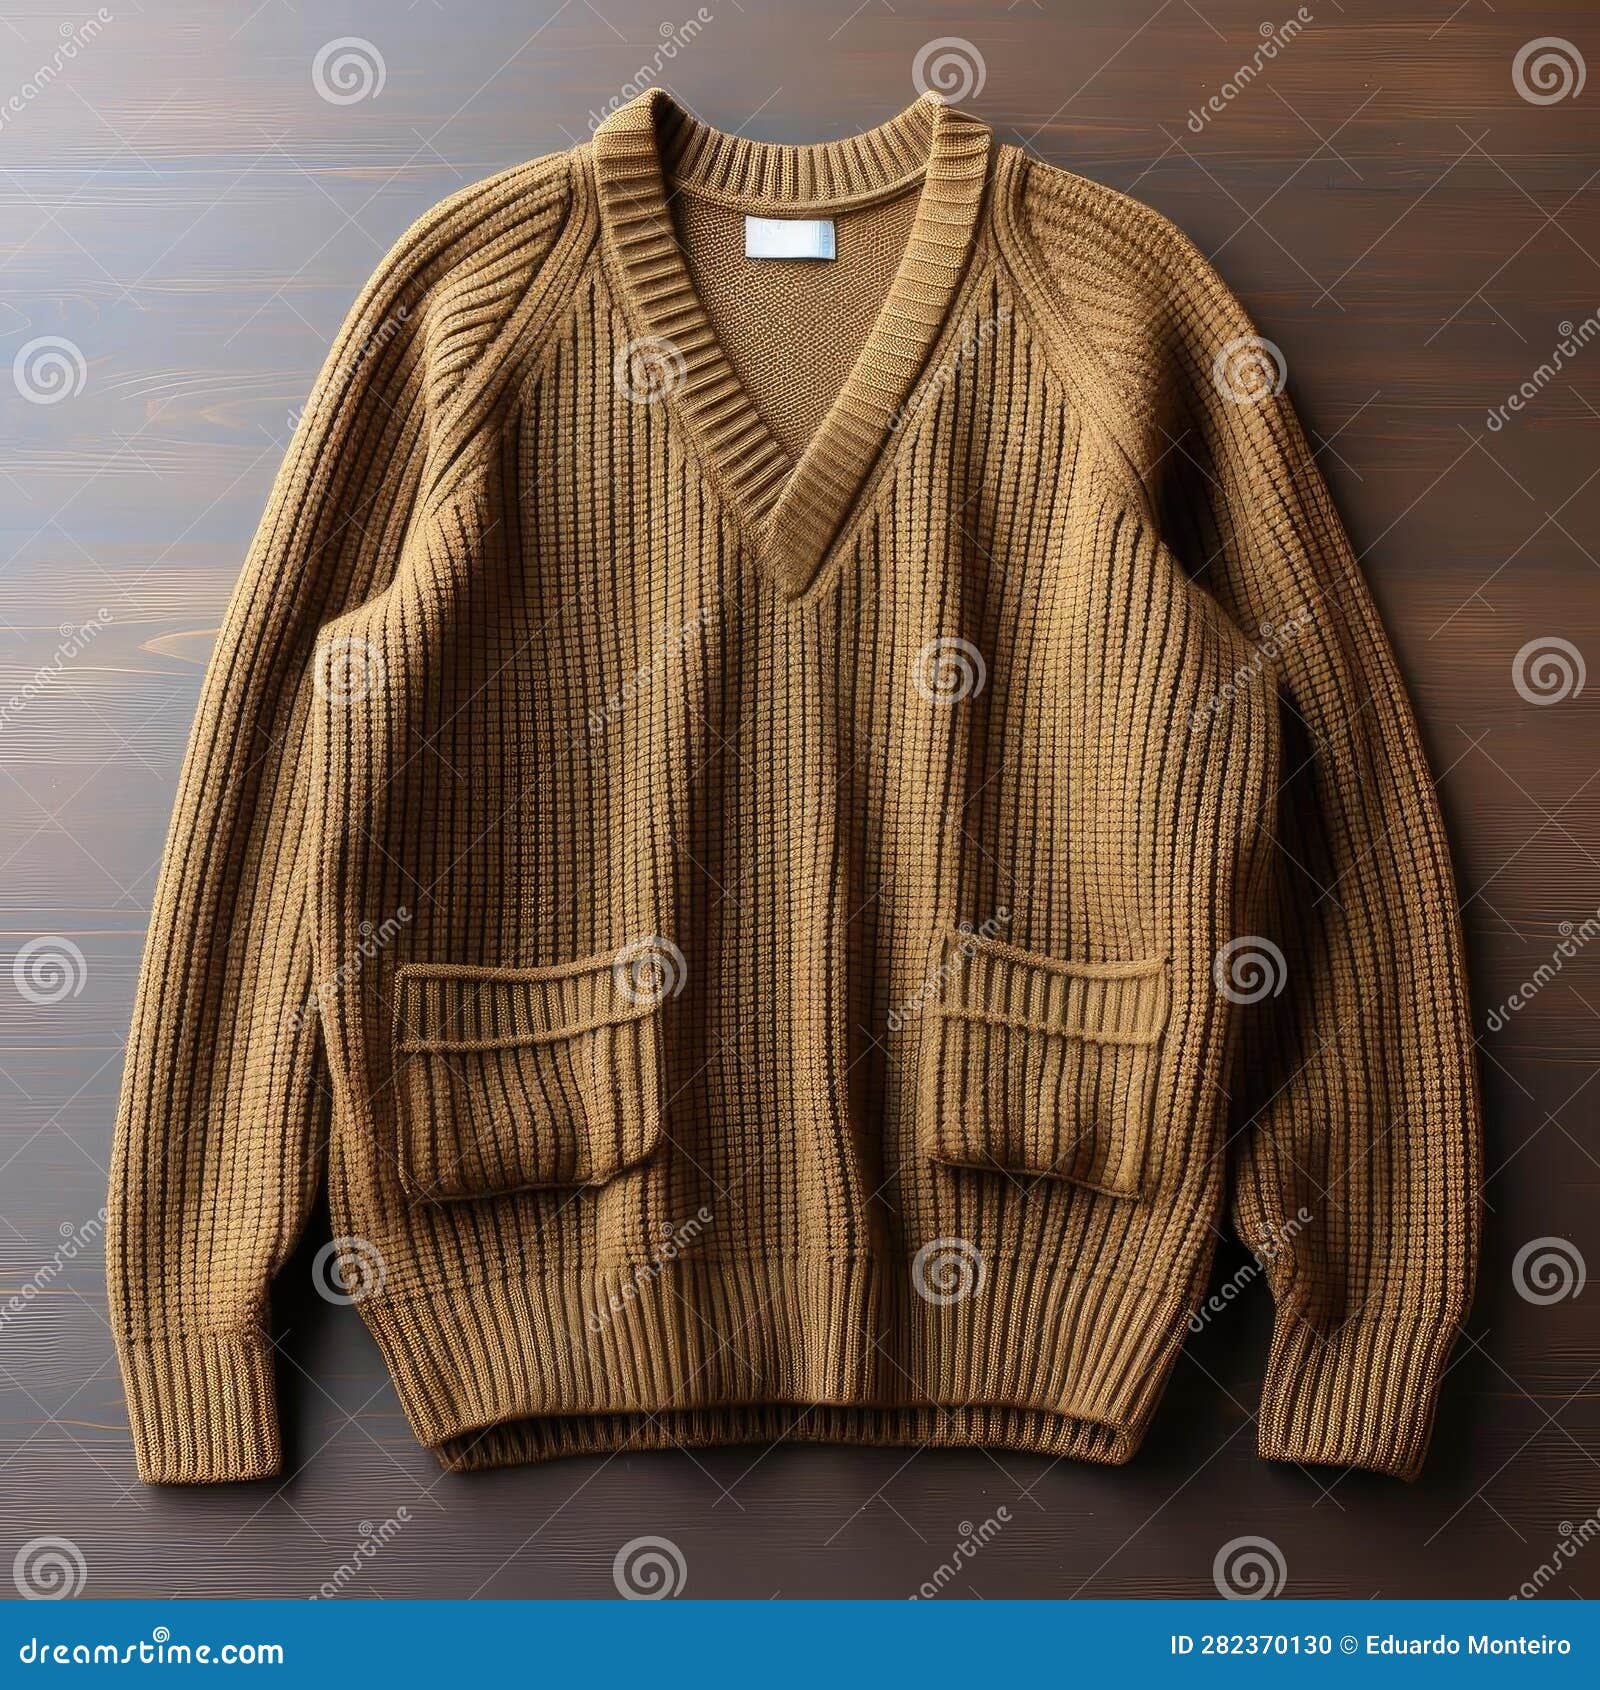 Camel Balloon Sleeve Sweater